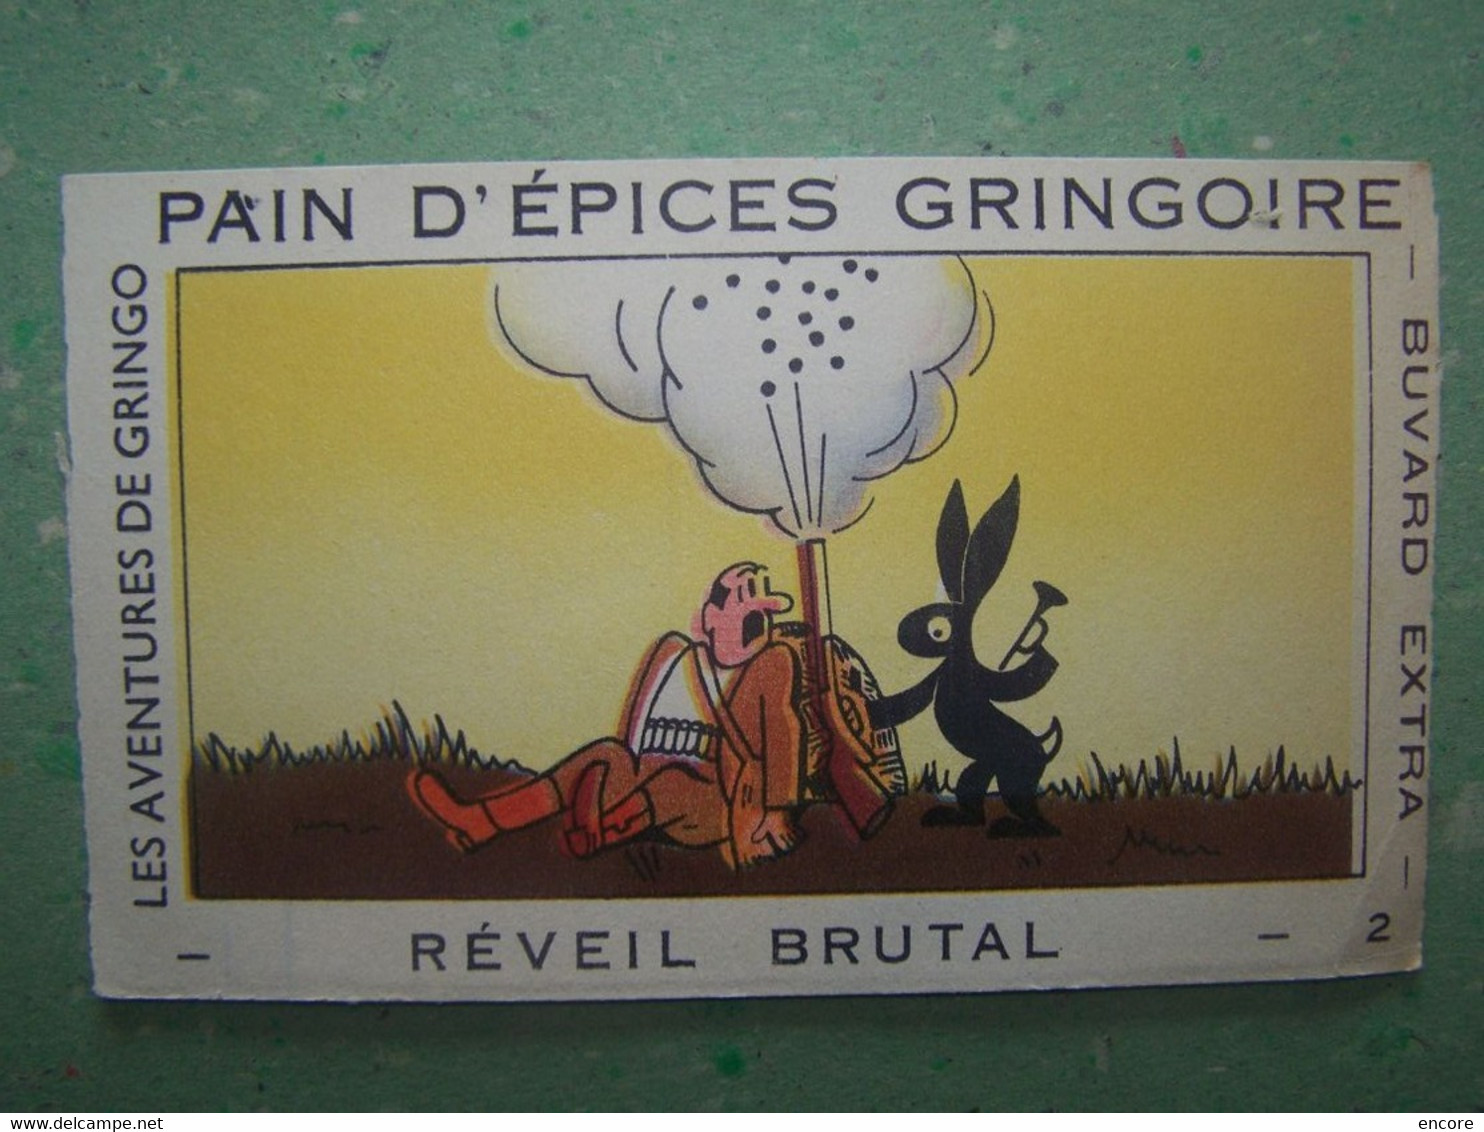 BUVARD. PUBLICITE "PAIN D'EPICES GRINGOIRE". LA CHASSE. REVEIL BRUTAL. 100_7026TRC"a" - Honigkuchen-Lebkuchen